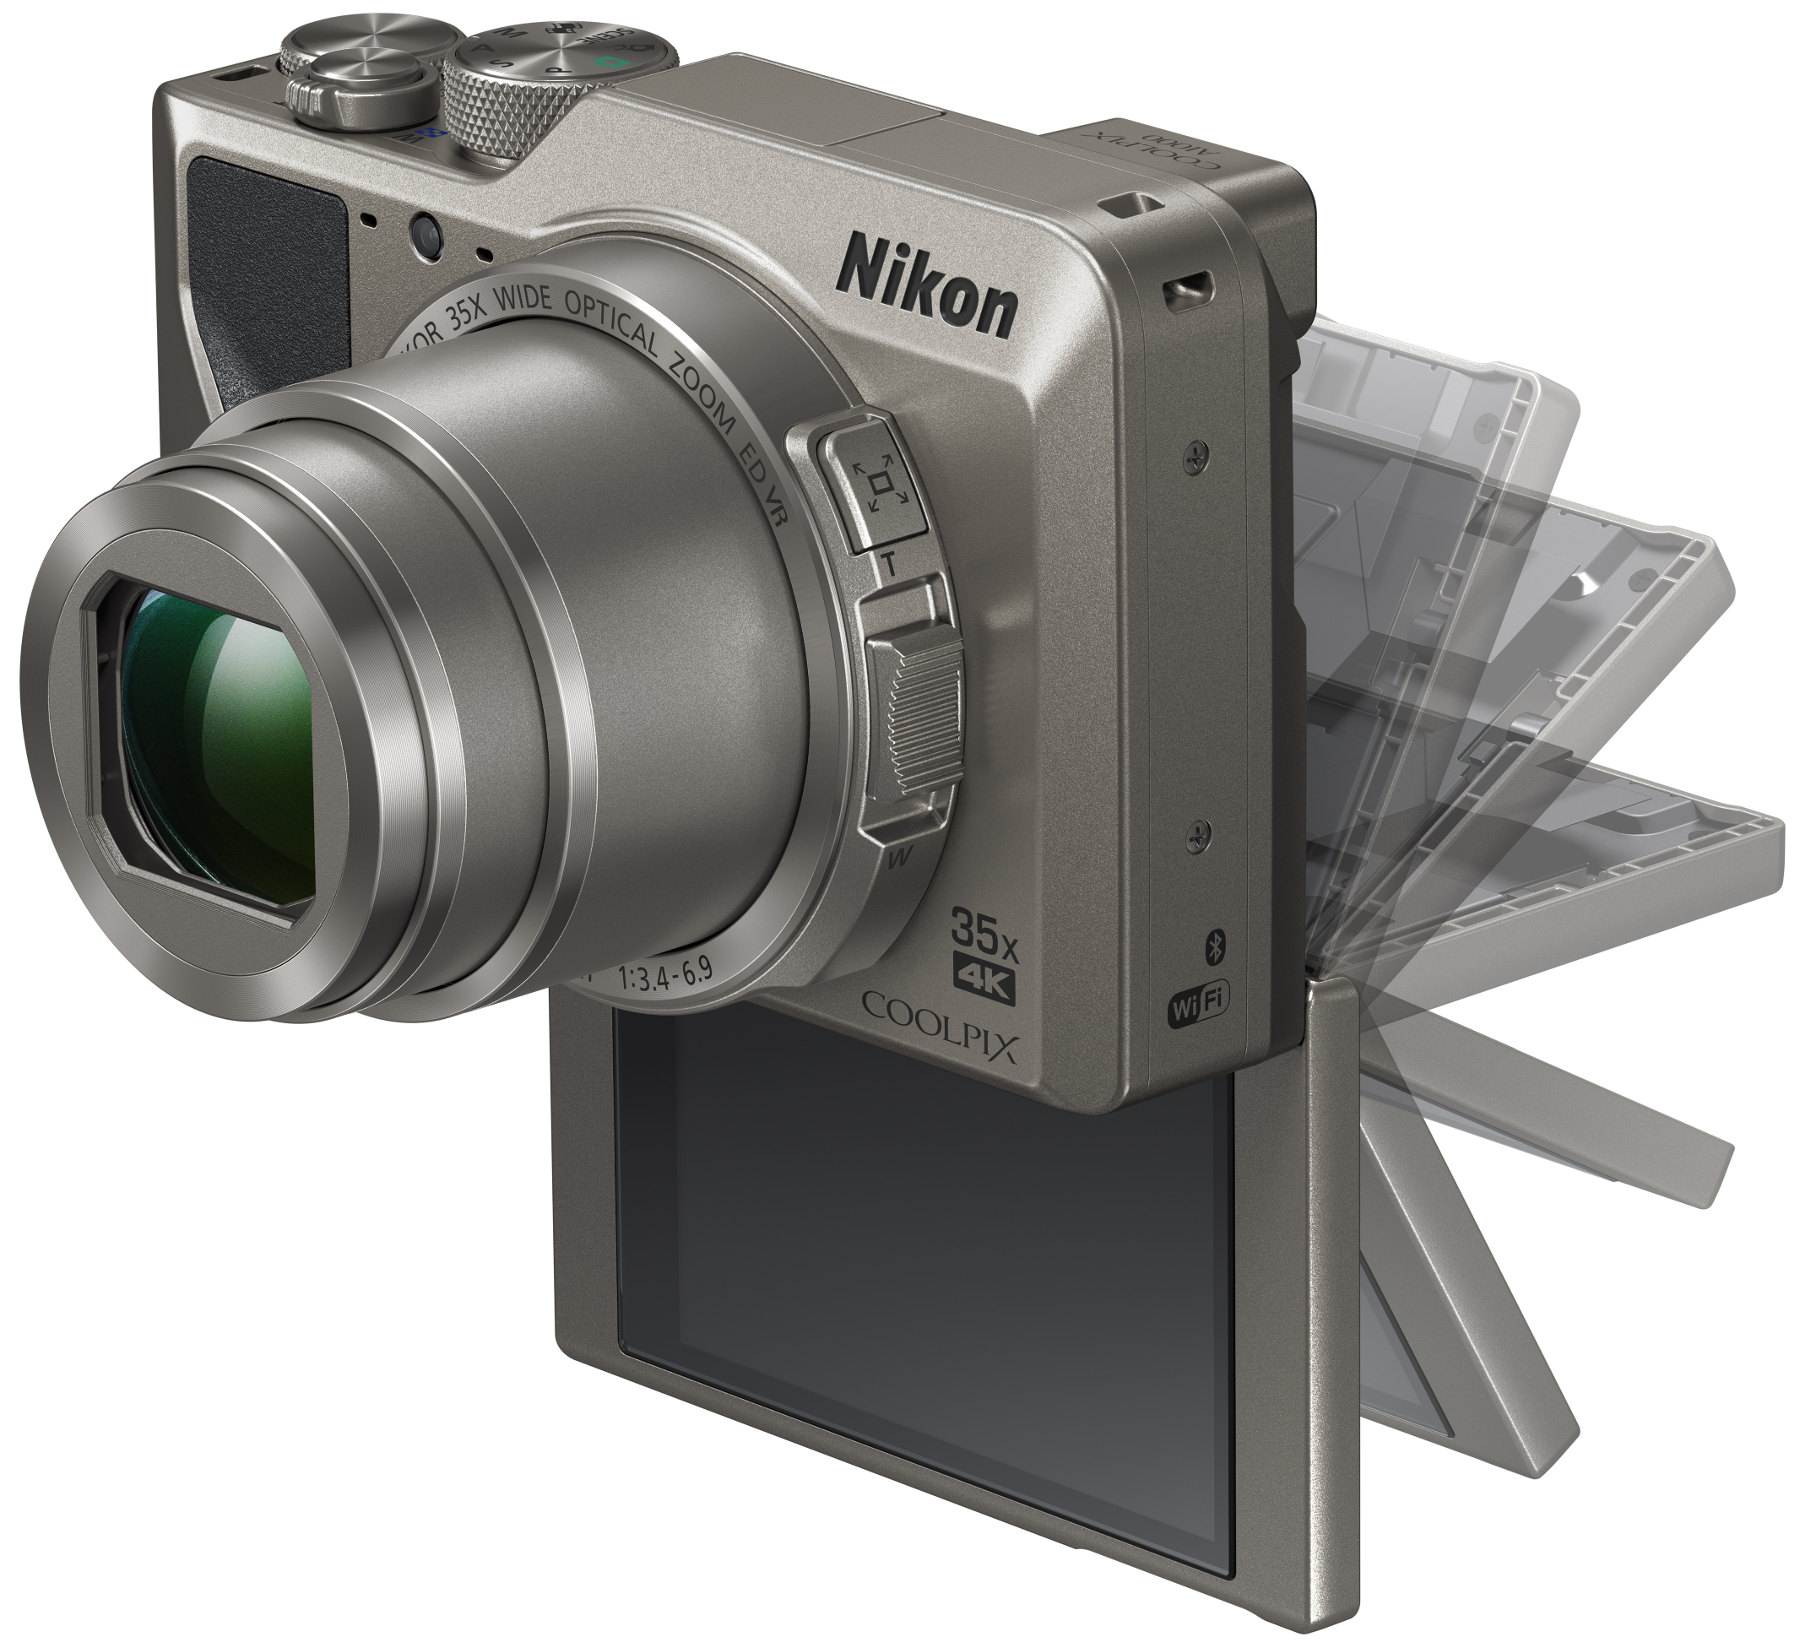 Автоматическая фотокамера производит растровые изображения размером 480 на 640 пикселей при этом 40